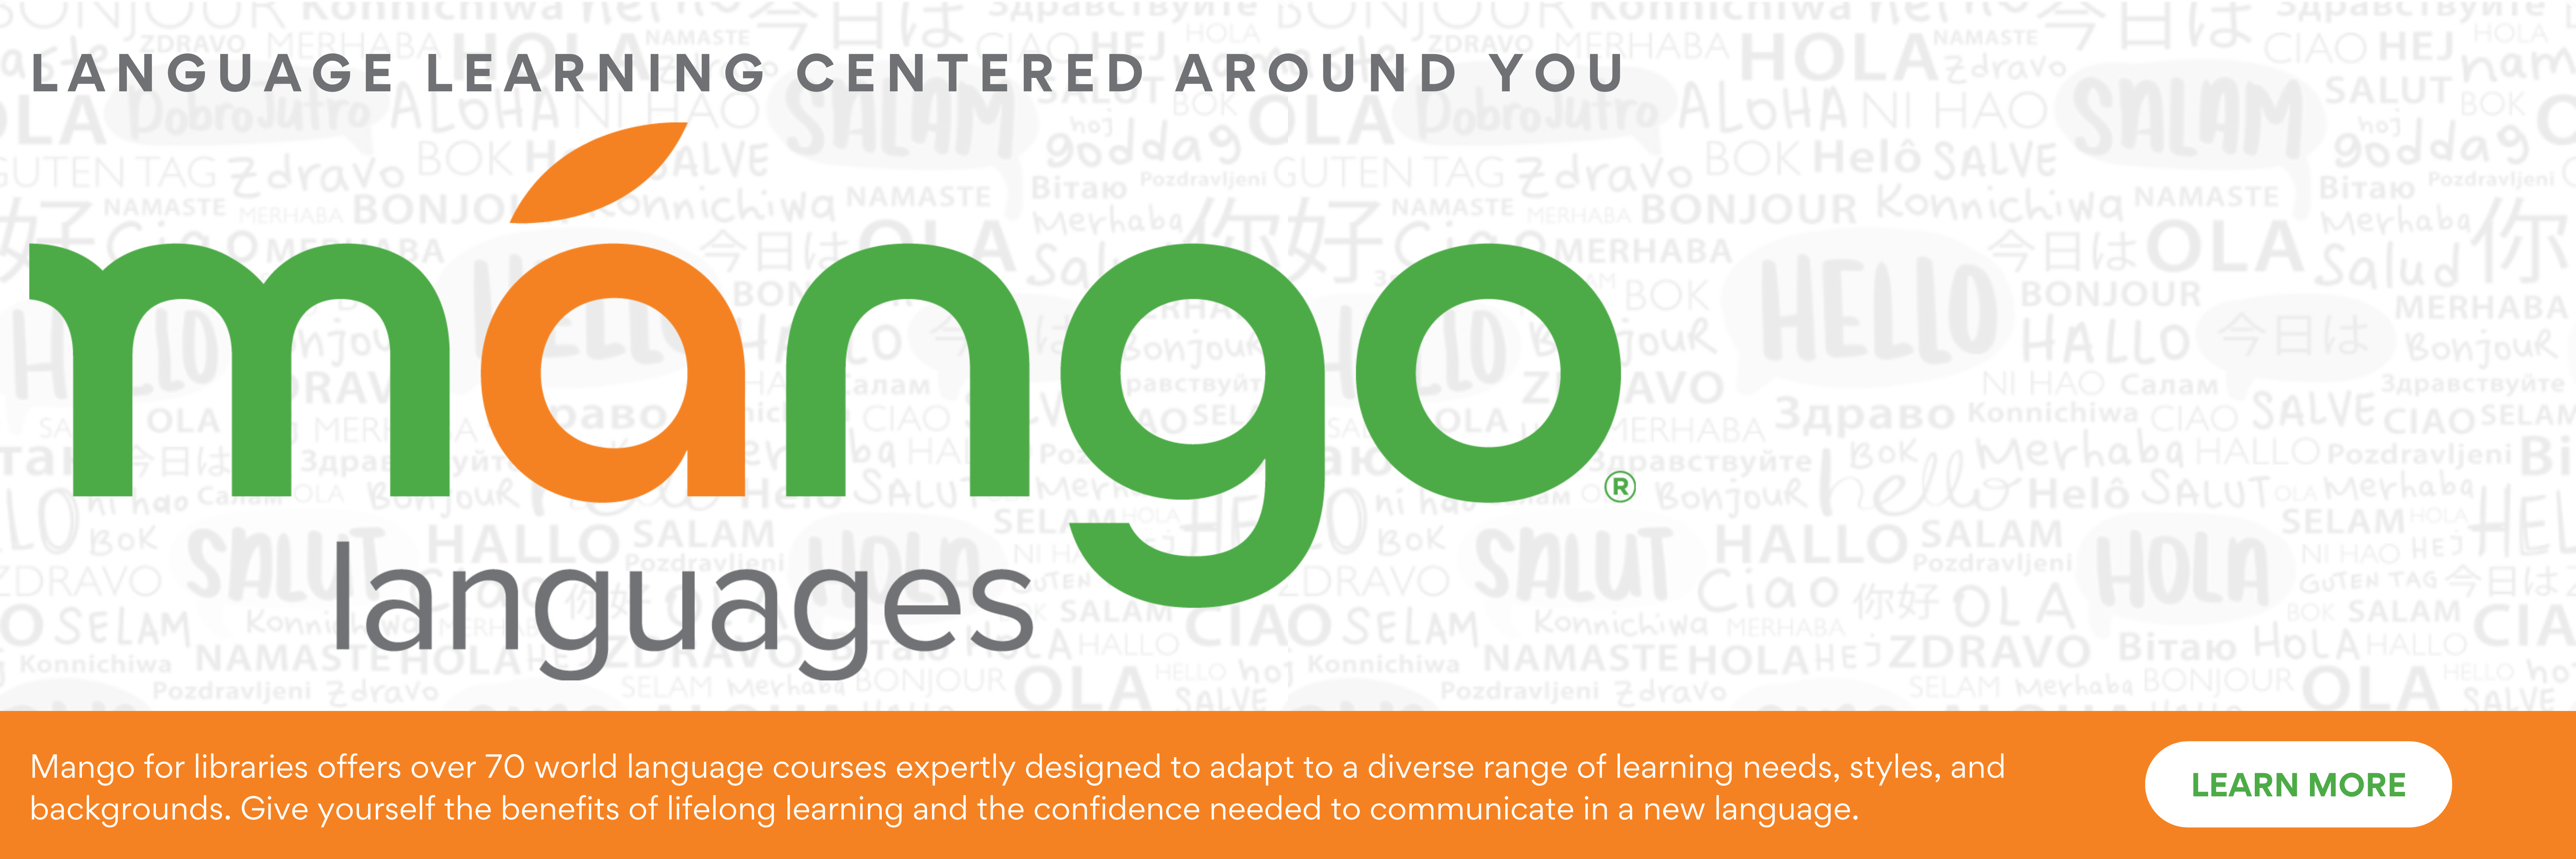 Mango language learning